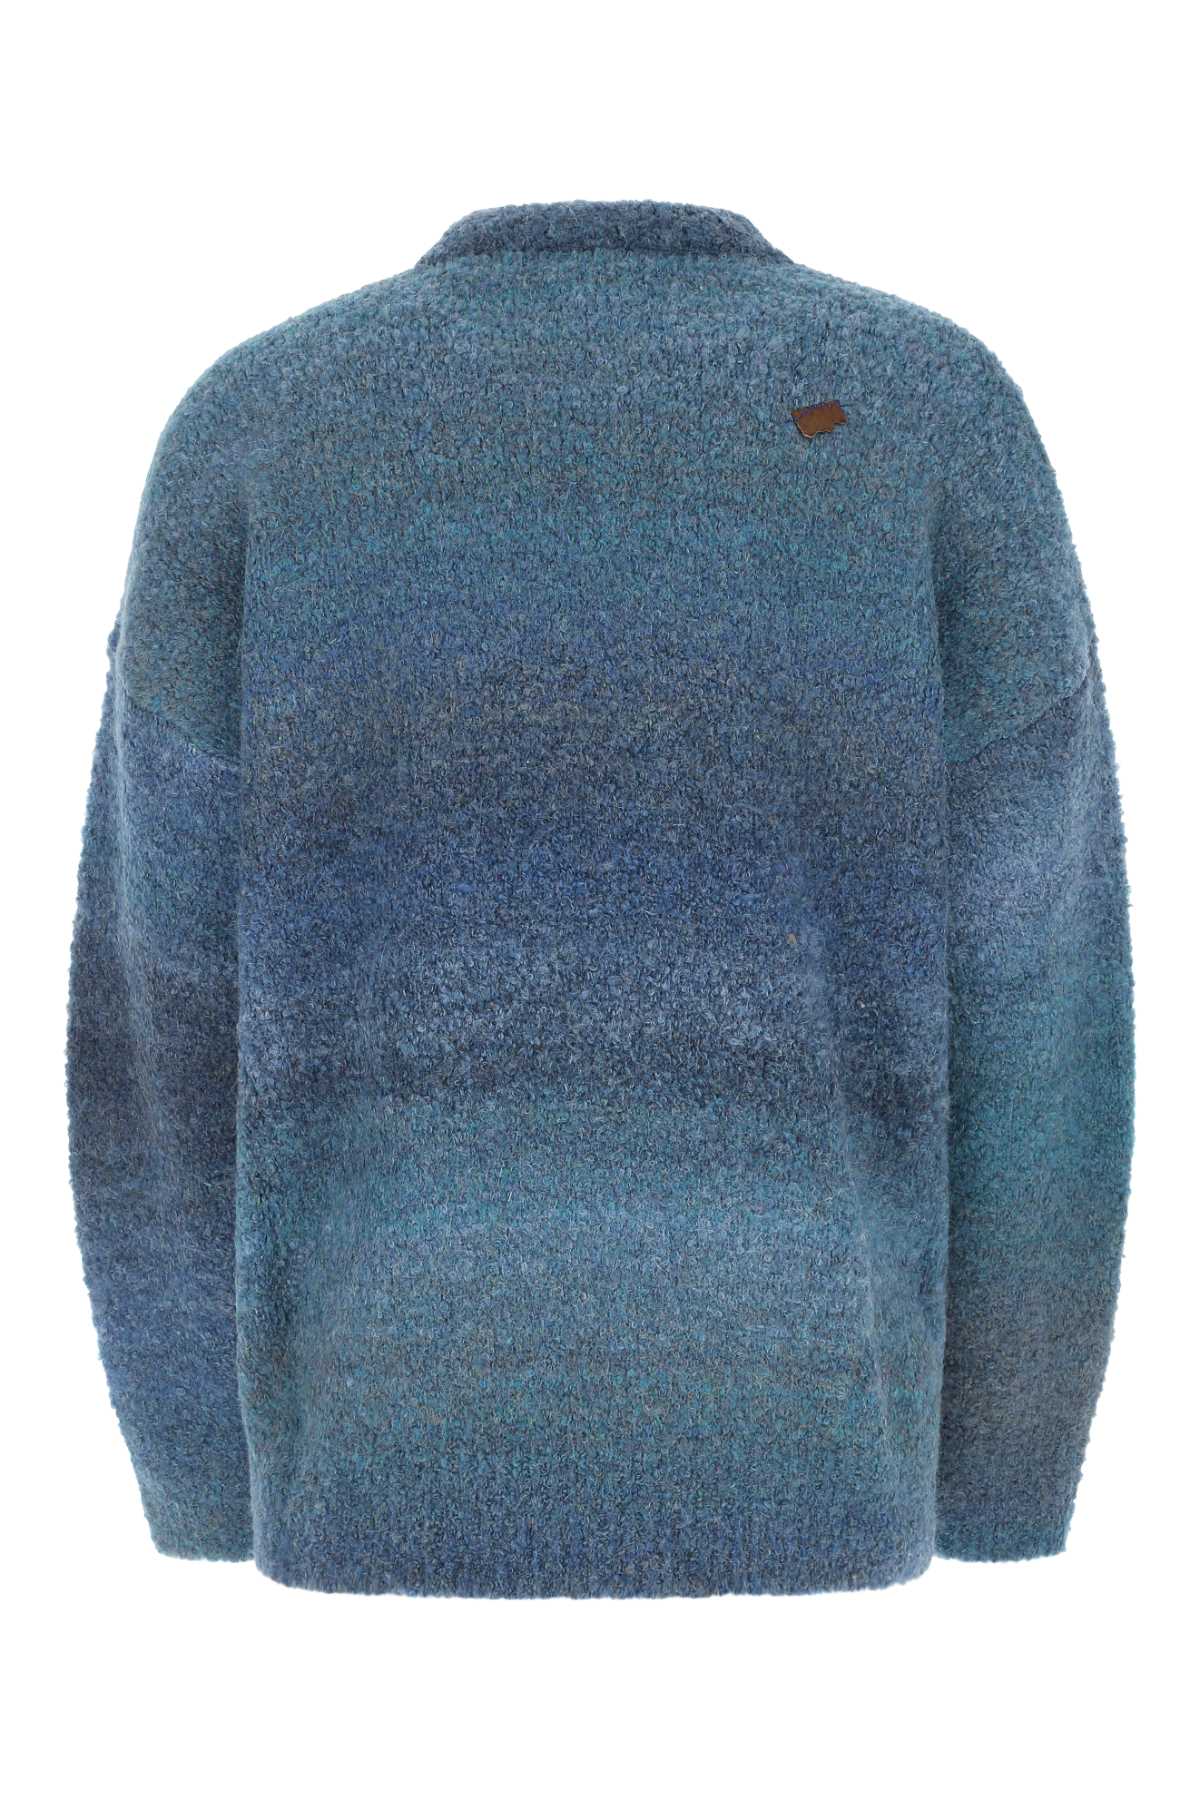 Shop Ader Error Blue Polyester Blend Oversize Sweater